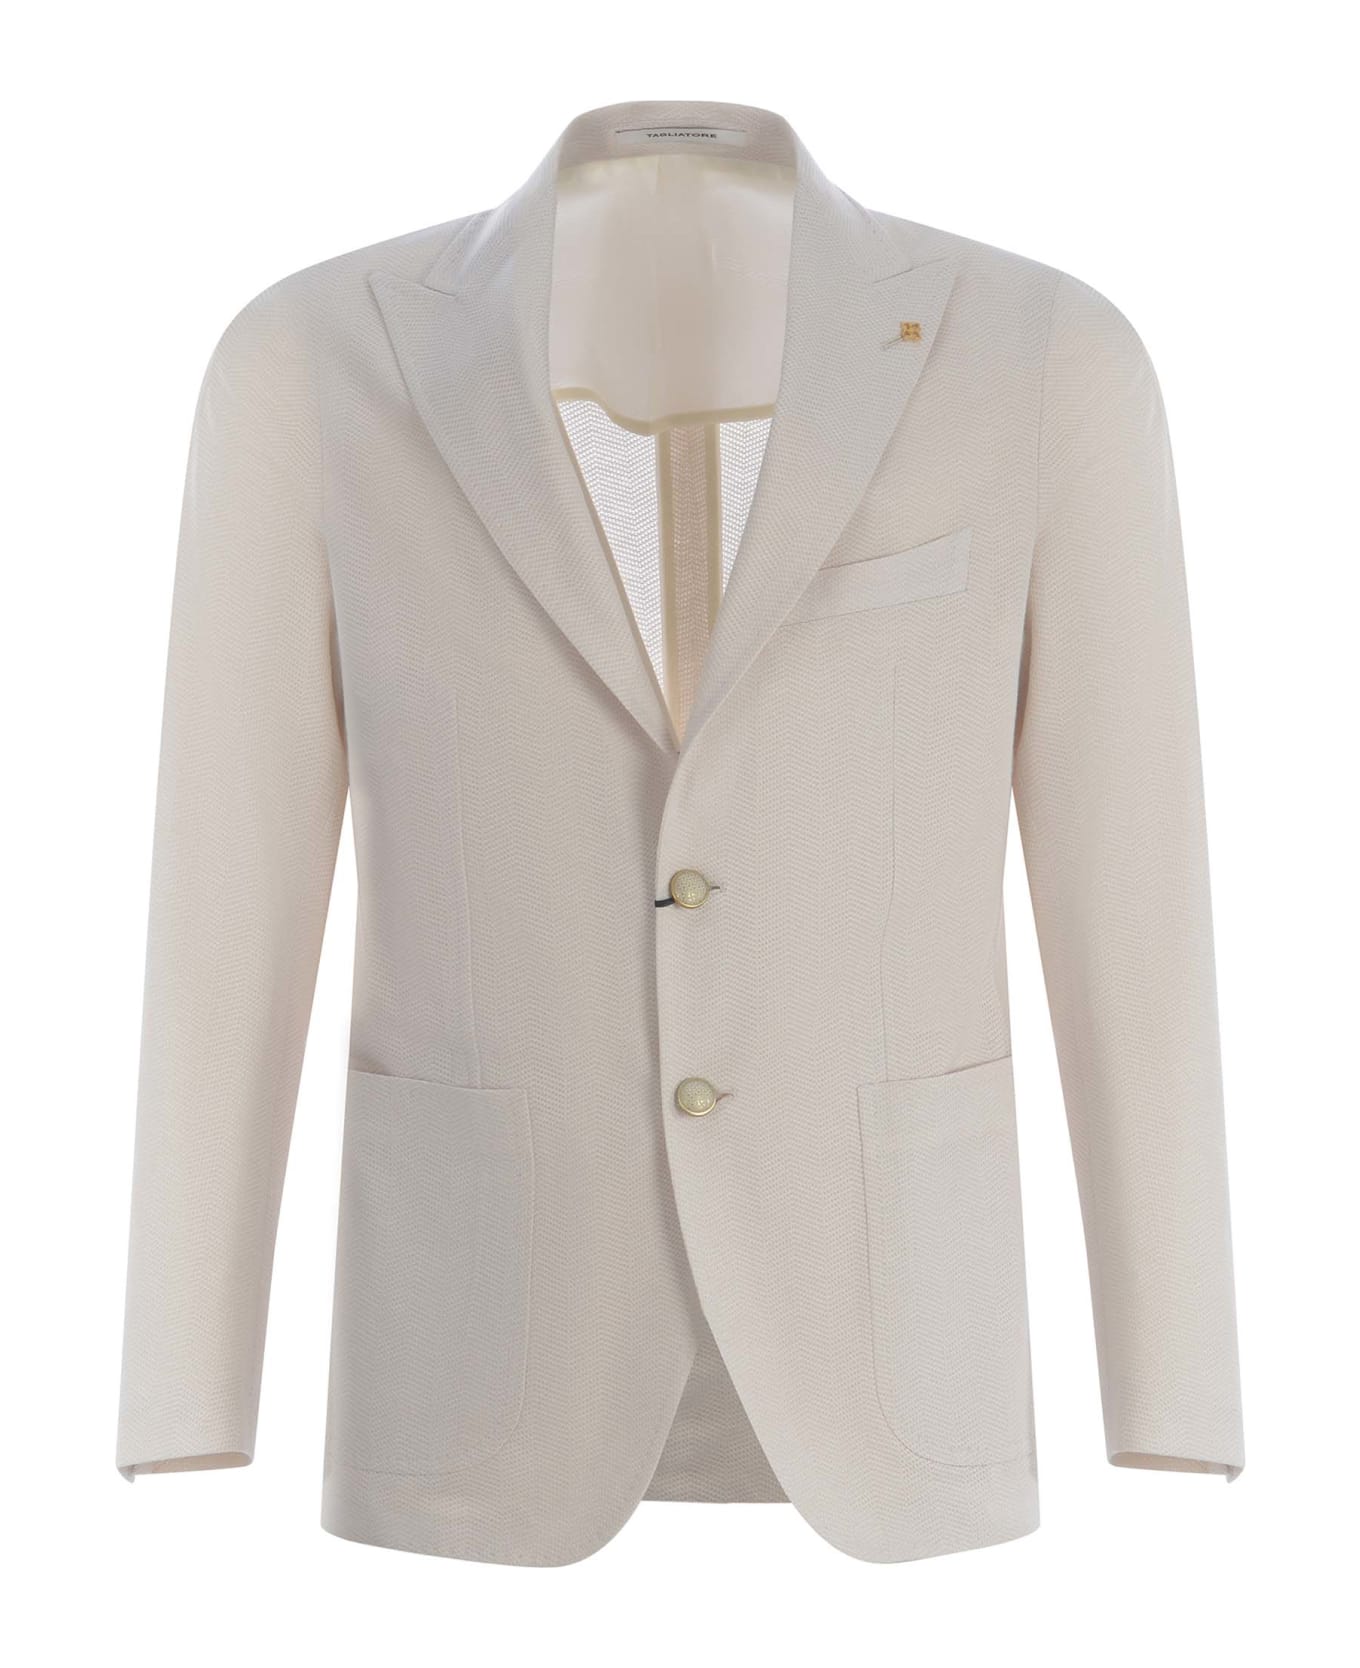 Tagliatore Single-breasted Jacket Tagliatore Made Of Cotton - Crema